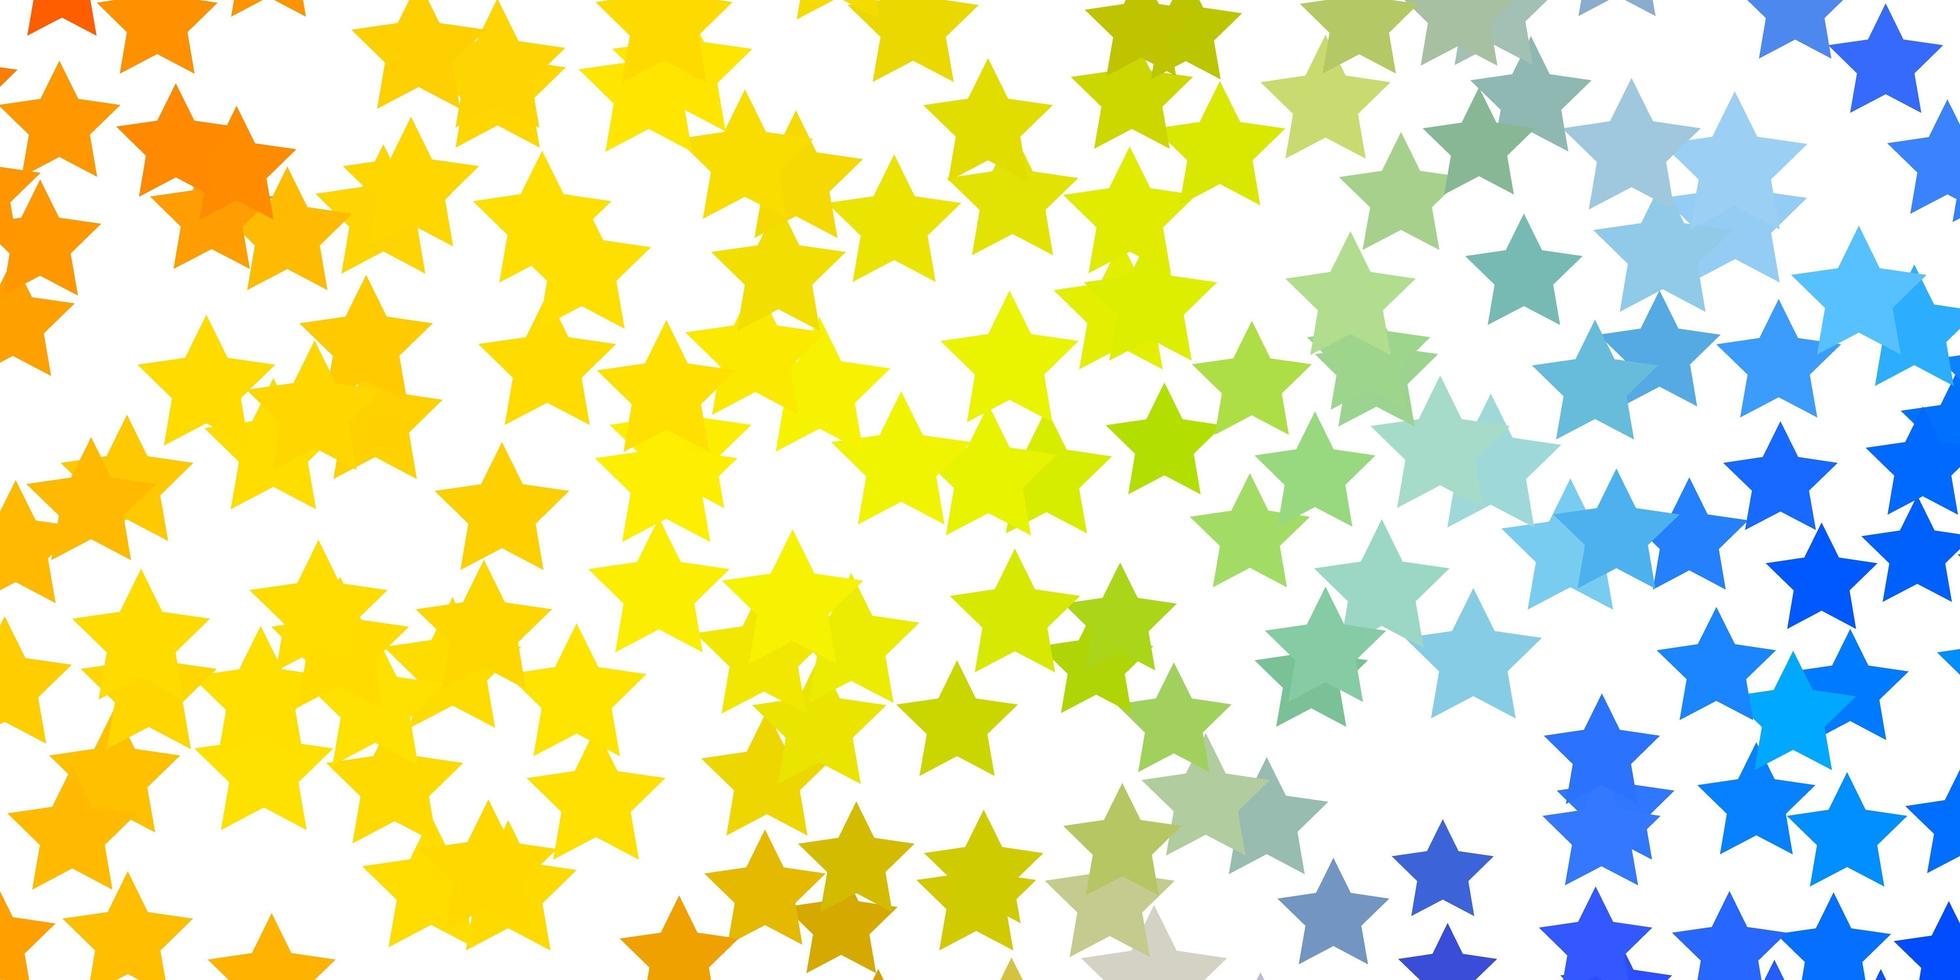 sfondo vettoriale giallo azzurro con stelle piccole e grandi illustrazione colorata in stile astratto con motivo a stelle sfumate per libretti pubblicitari di capodanno